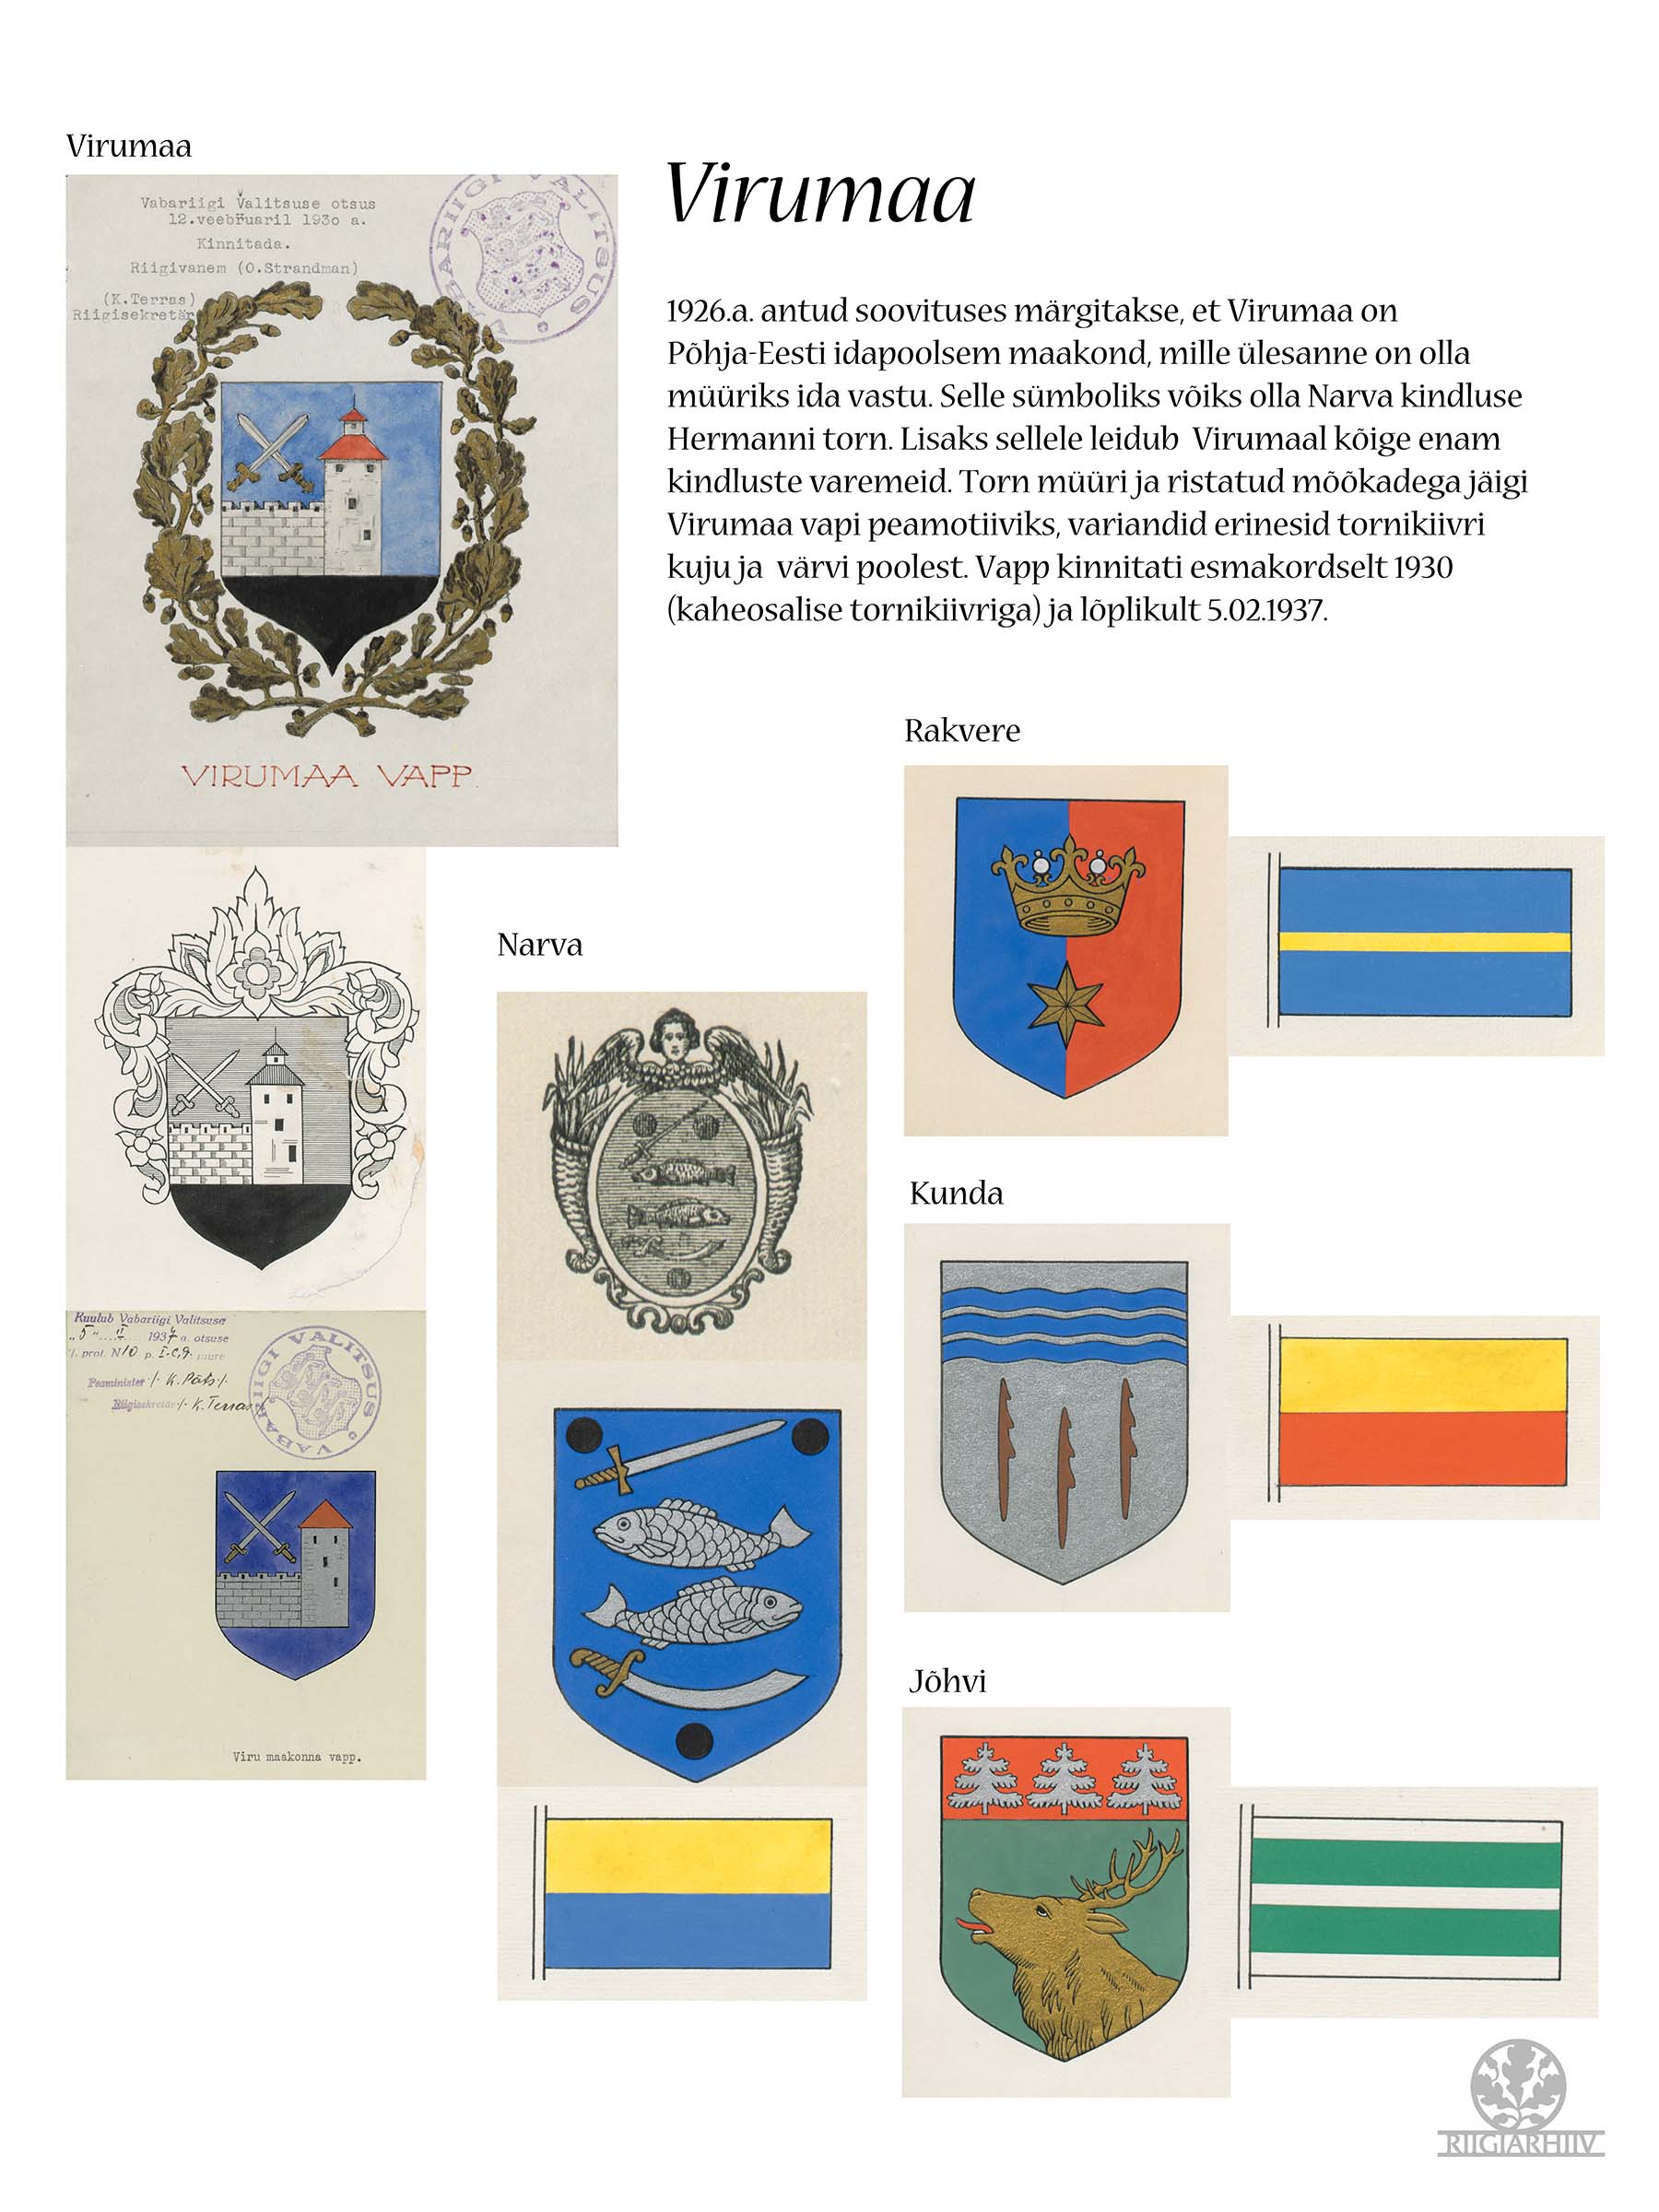 Virumaa. Narva, Rakvere, Kuna ja Jõhvi vapid ja lipud.